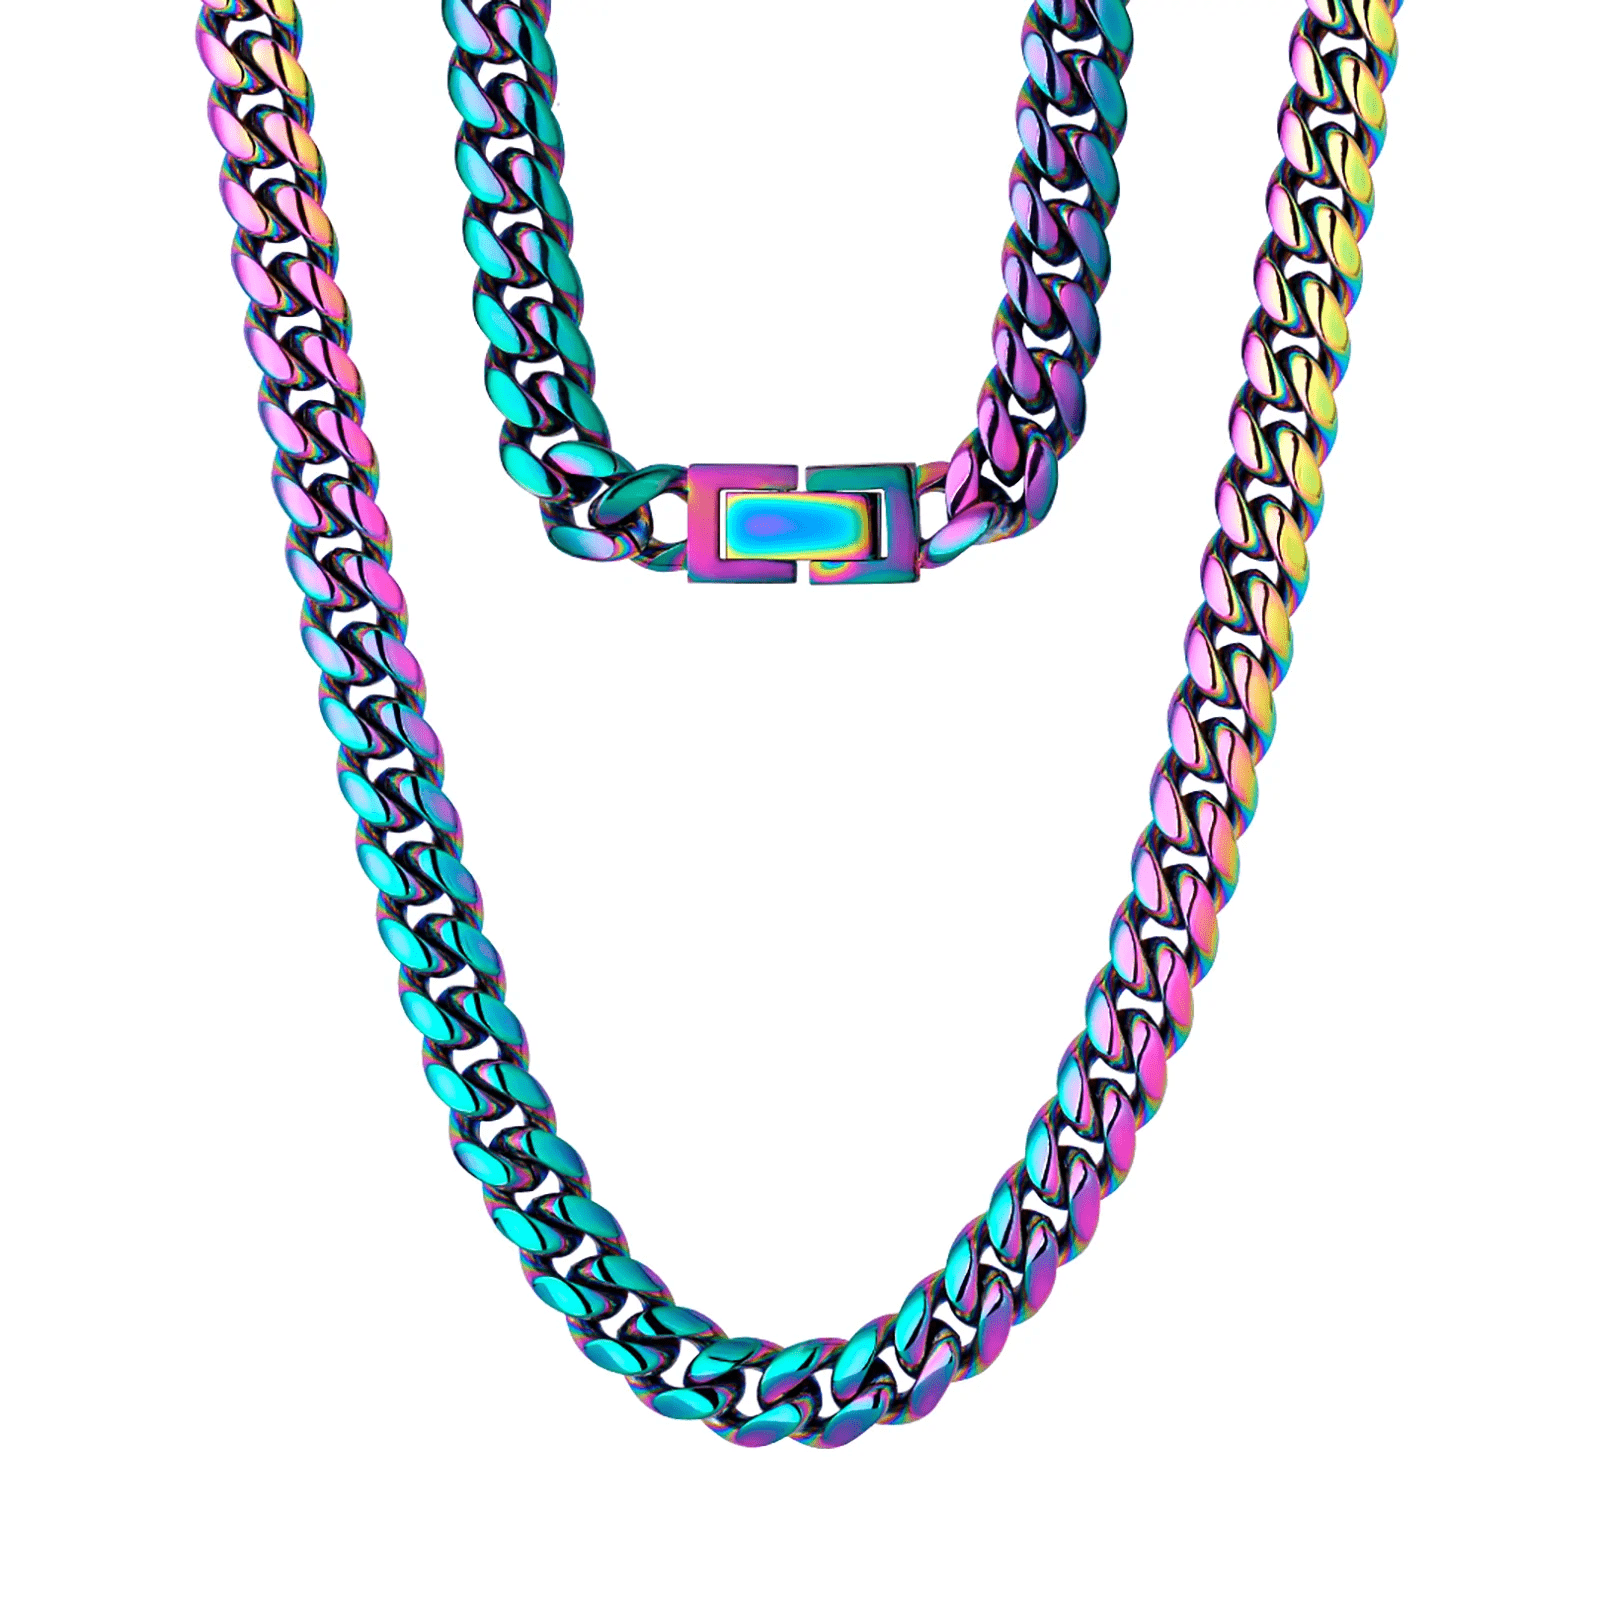 Colorful Cuban Link Chain Enamel Necklace Bracelet Set Hip Hop